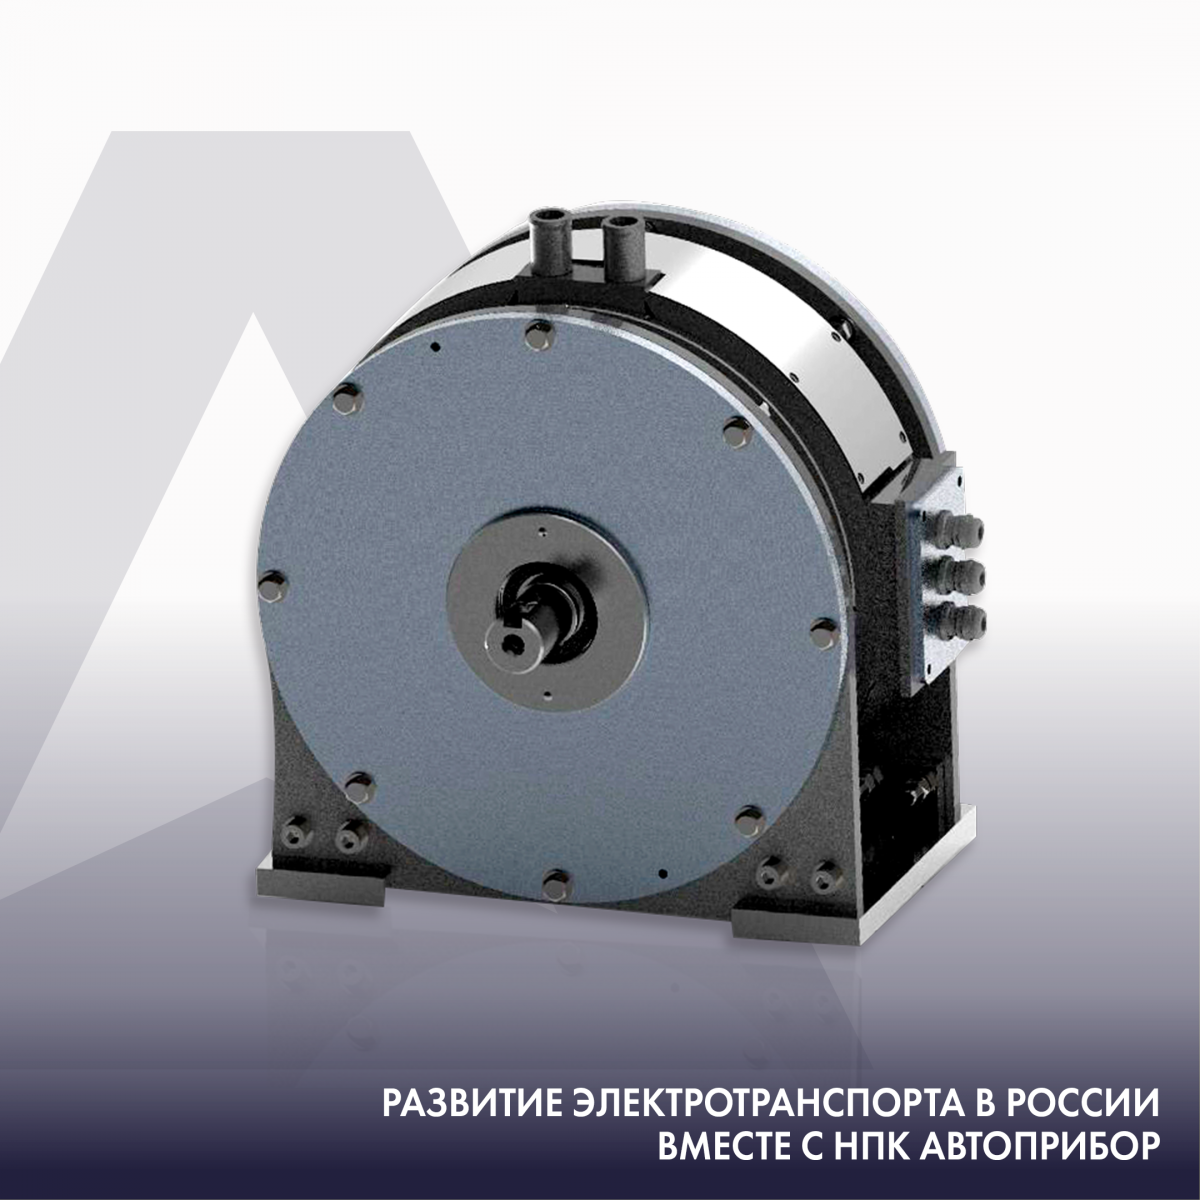 НПК АВТОПРИБОР разработал уникальный синхронный двигатель, не имеющий аналогов в России